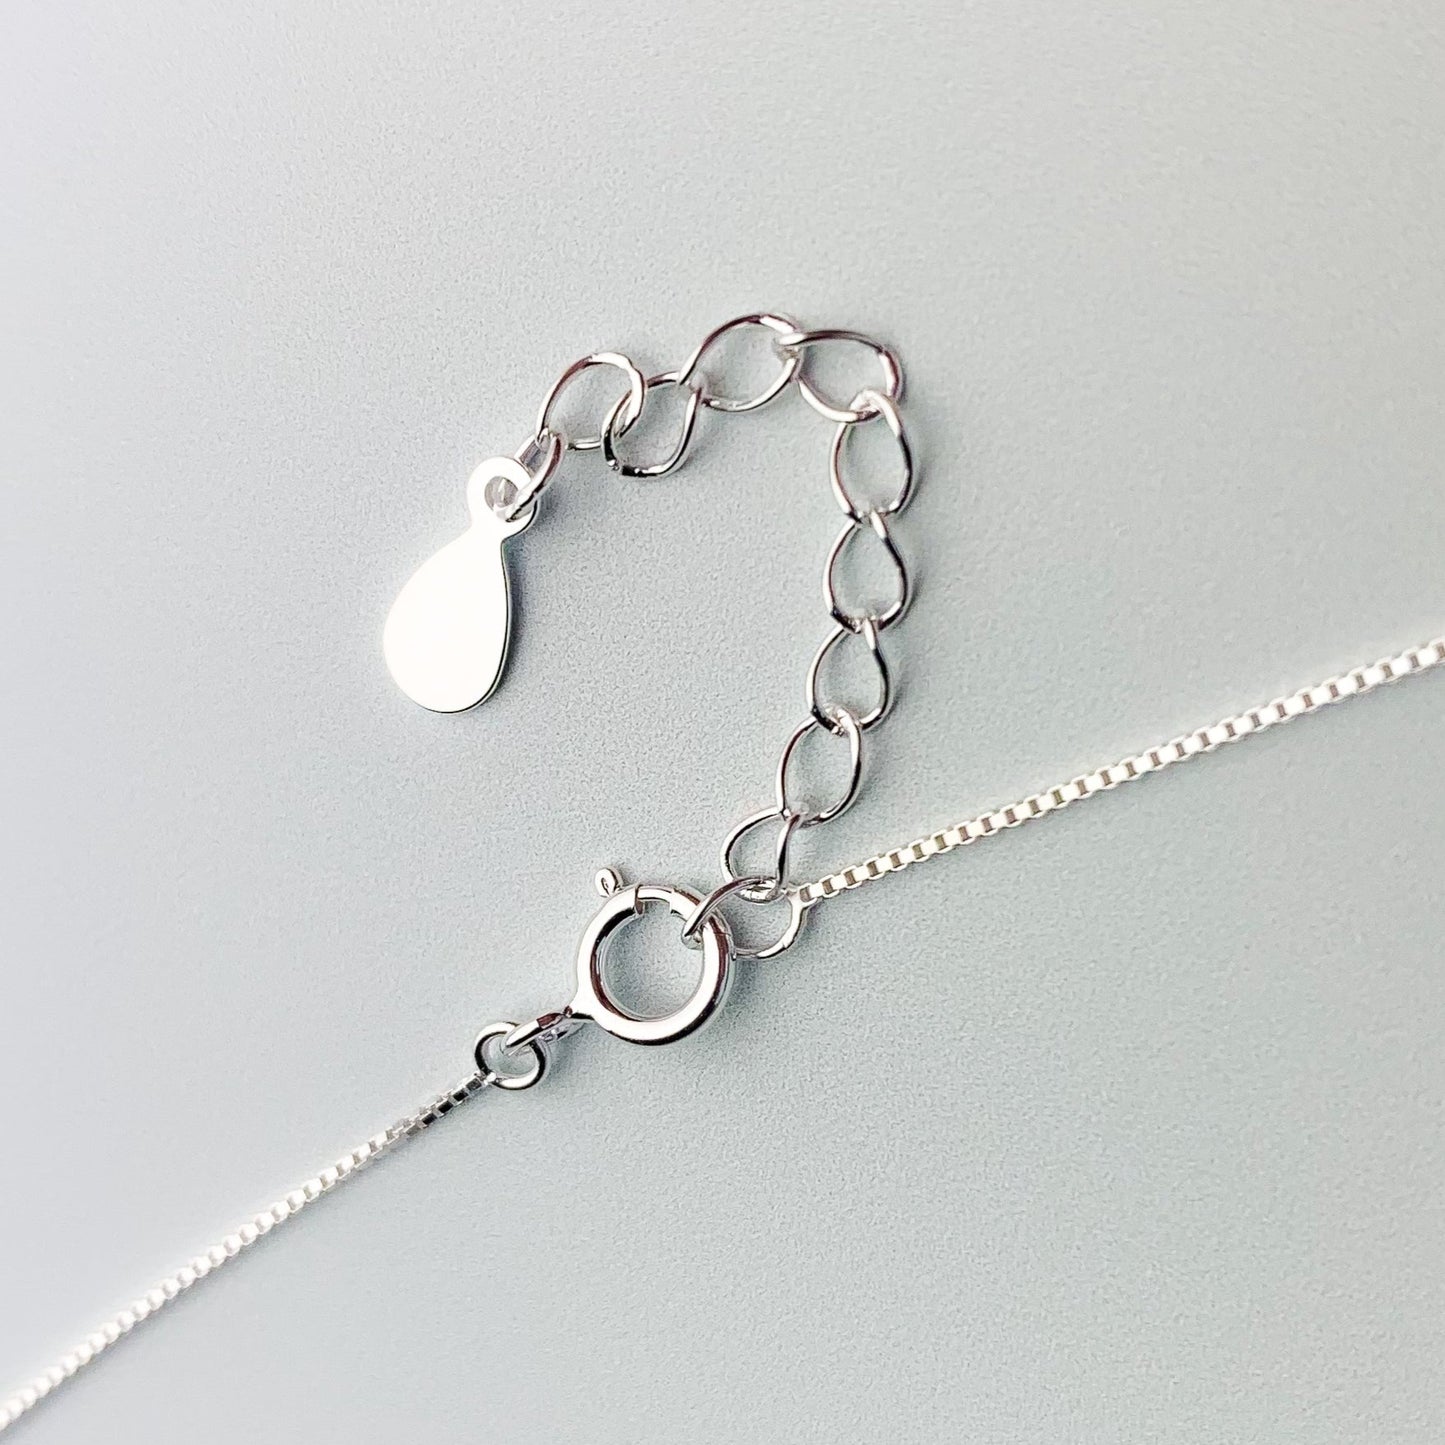 Brushed Silver Elephant Pendant Necklace